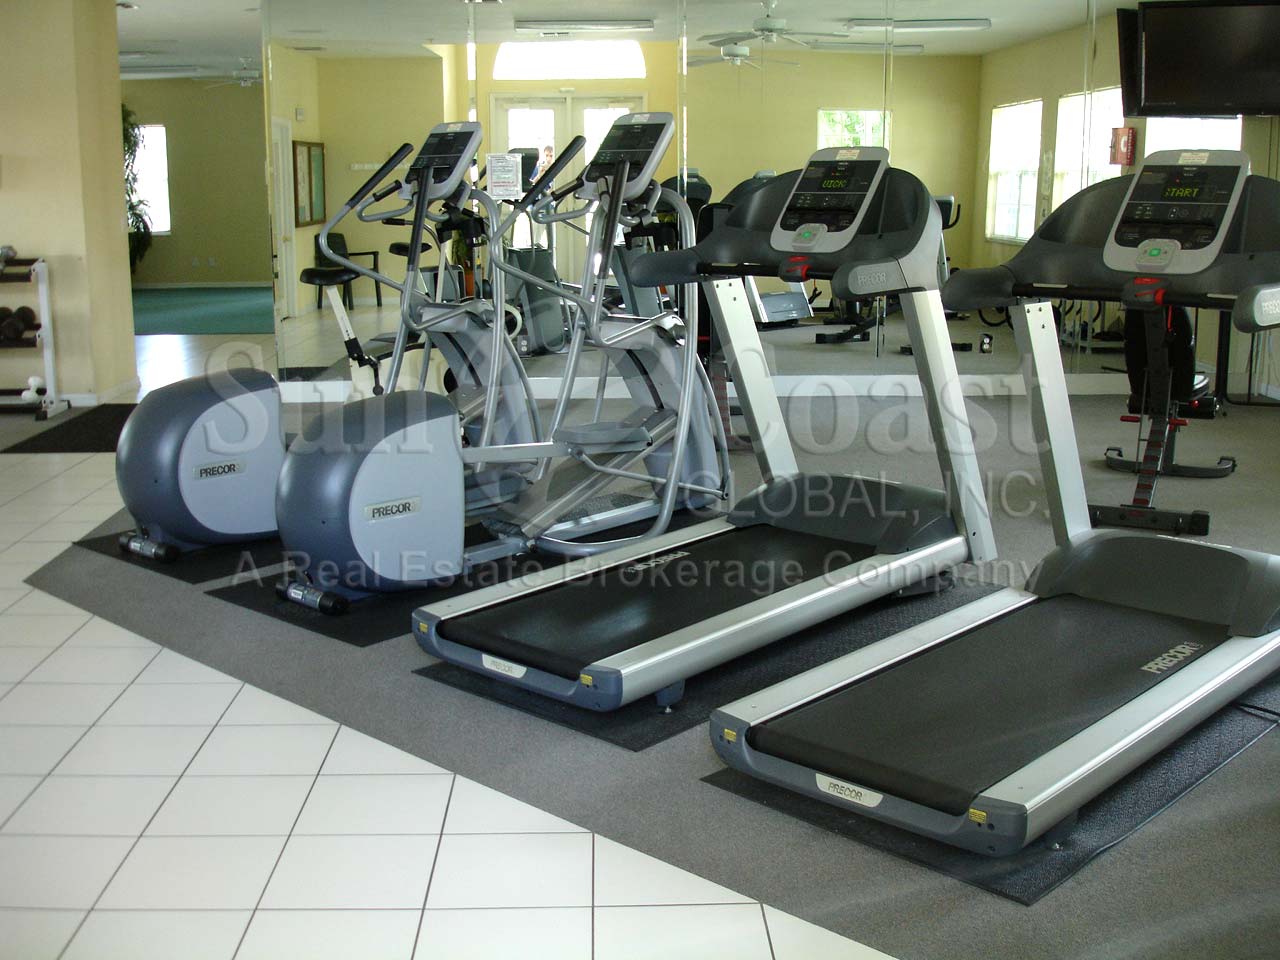 Calusa Bay fitness center